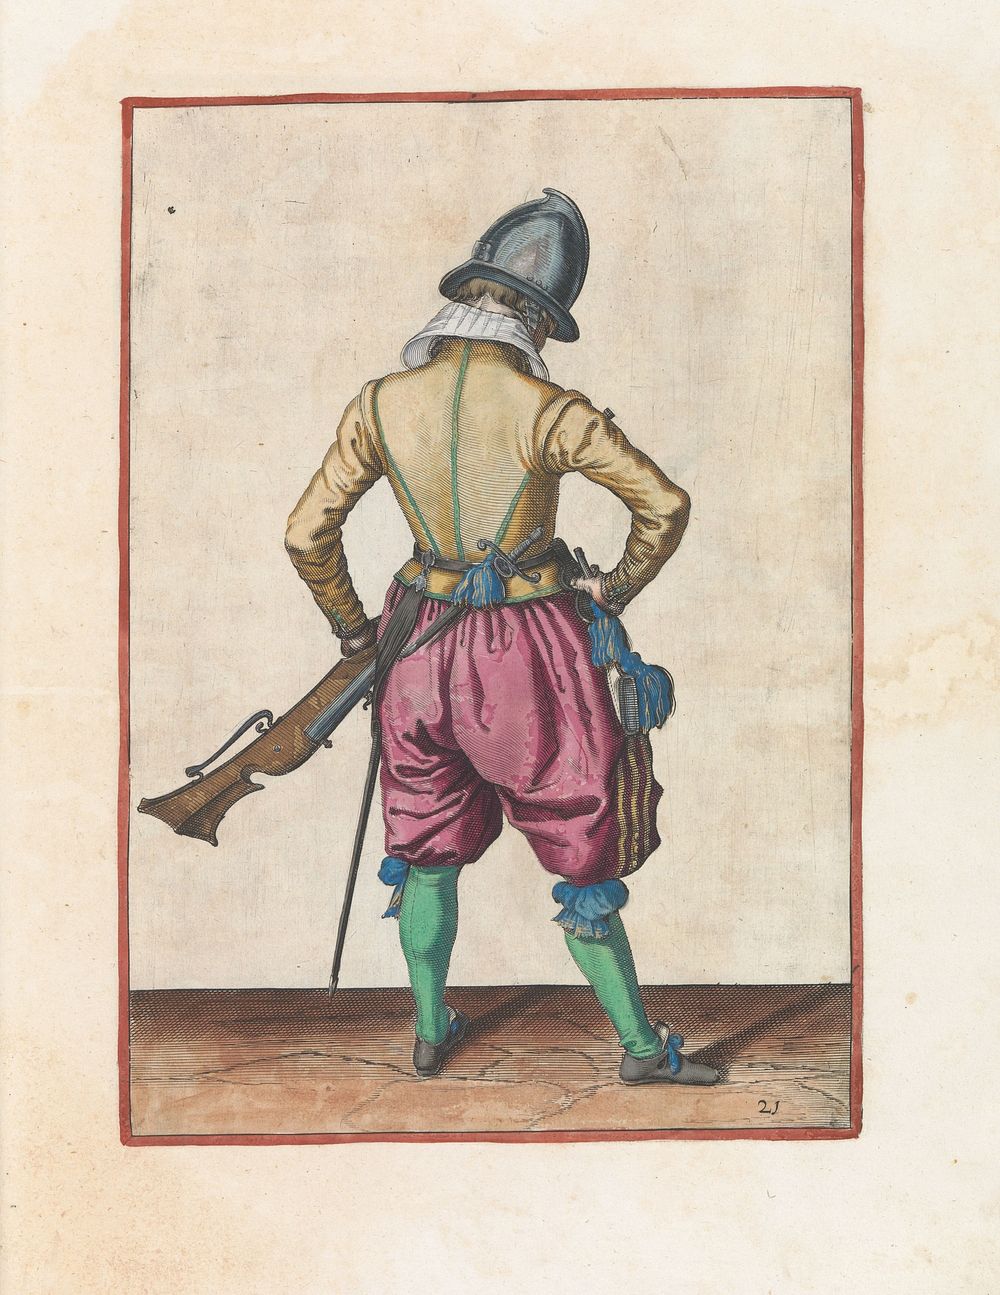 Soldaat met een roer die zijn kruithoorn pakt (c. 1597 - 1607) by Jacques de Gheyn II and Jacques de Gheyn II